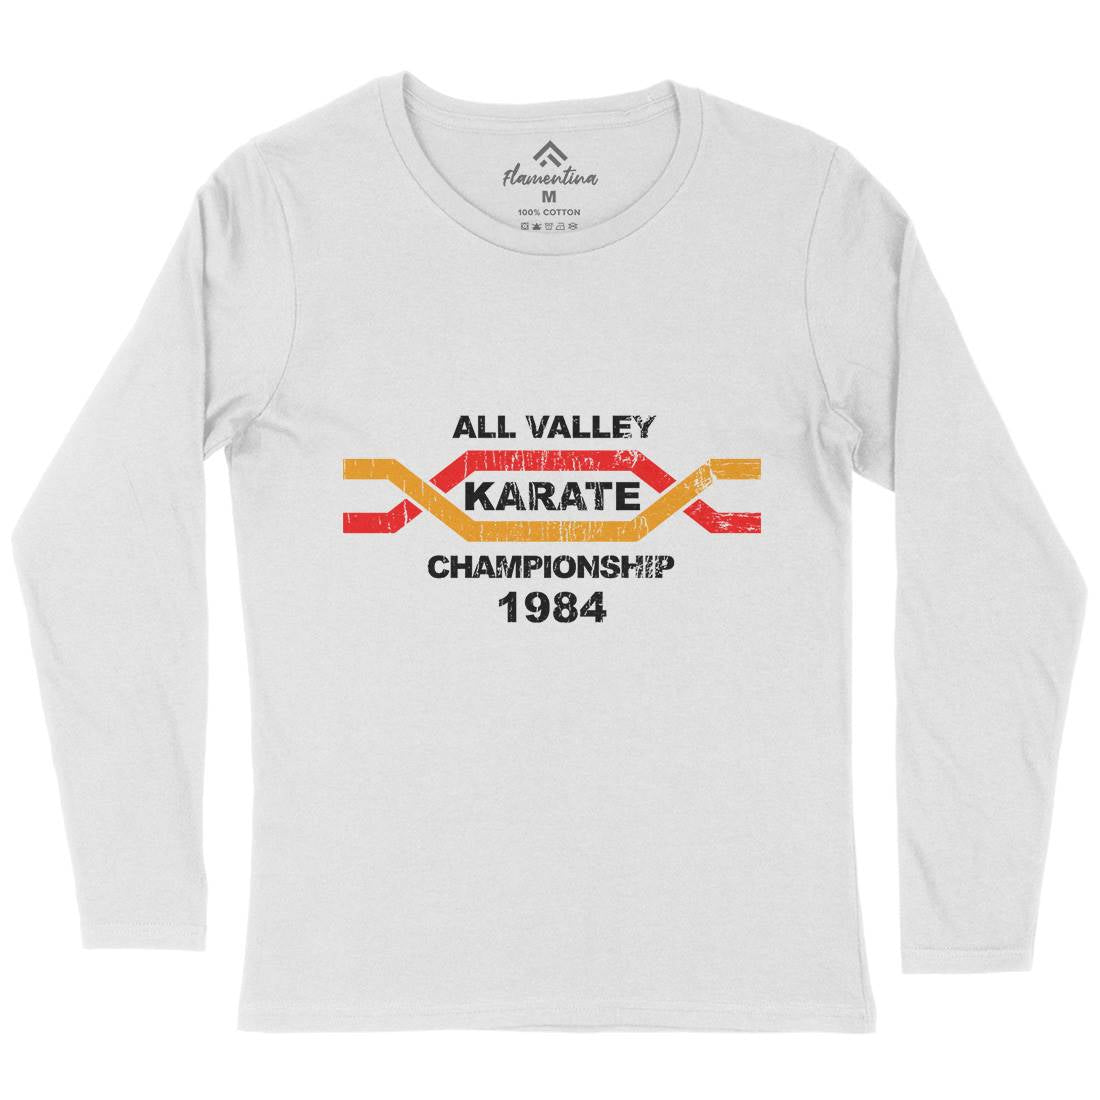 All Valley Womens Long Sleeve T-Shirt Sport D251